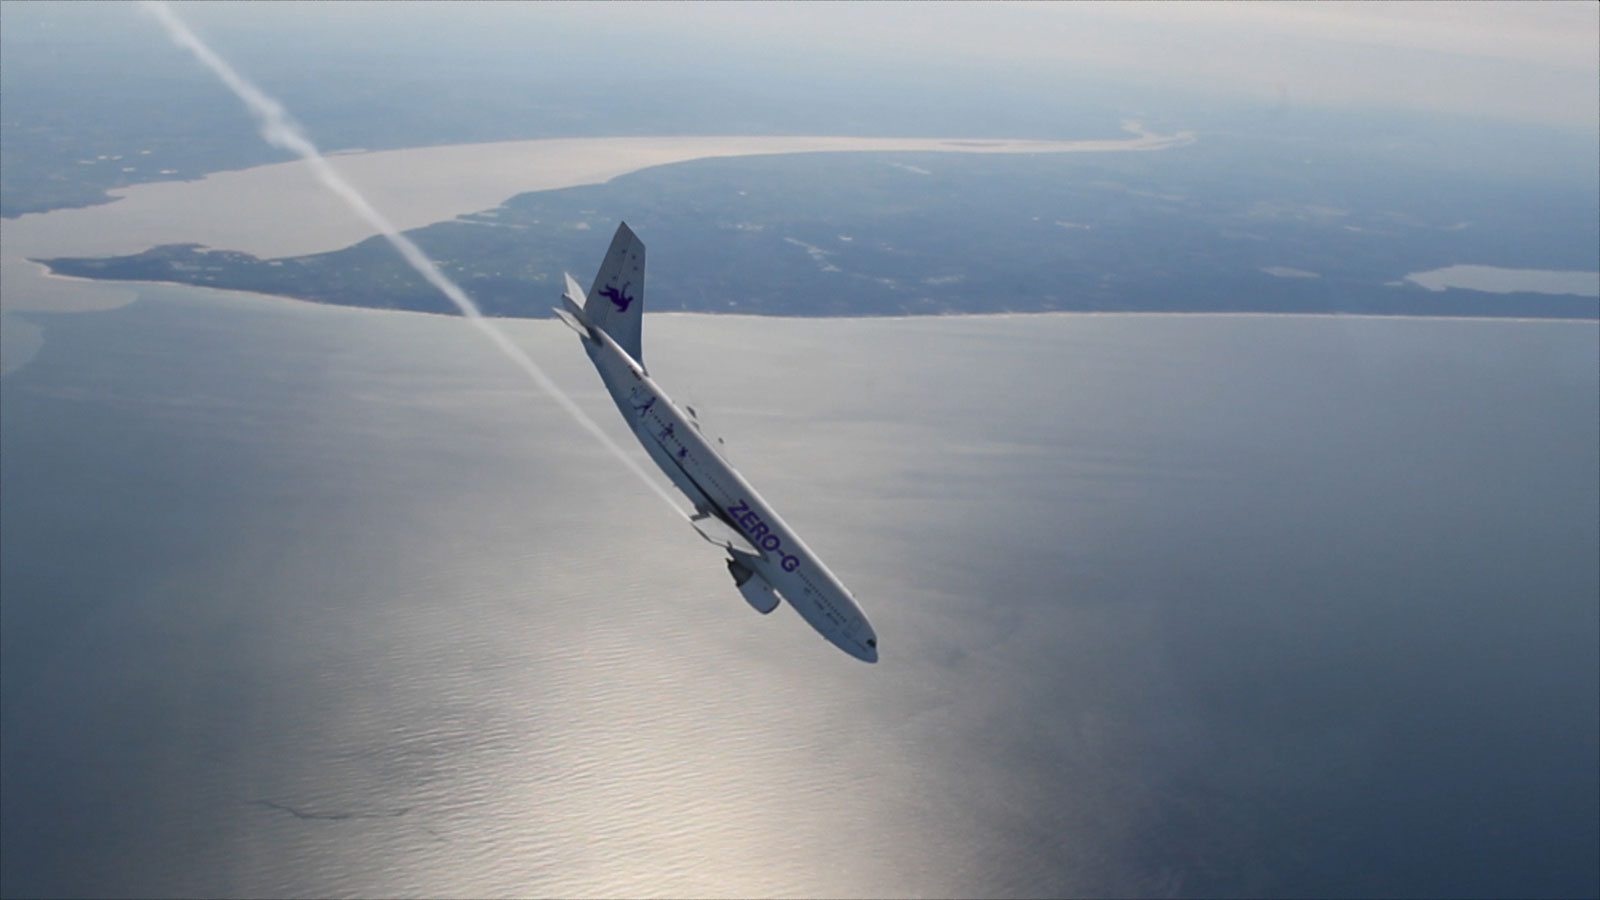 UZH Professor Oliver Ullrich nutzt Parabelflüge, um an Bord Experimente in der Schwerelosigkeit durchzuführen. Das Bild zeigt ein Parabelmanöver des A310 Zero-G. (Bild: Regina Sablotny, UZH)